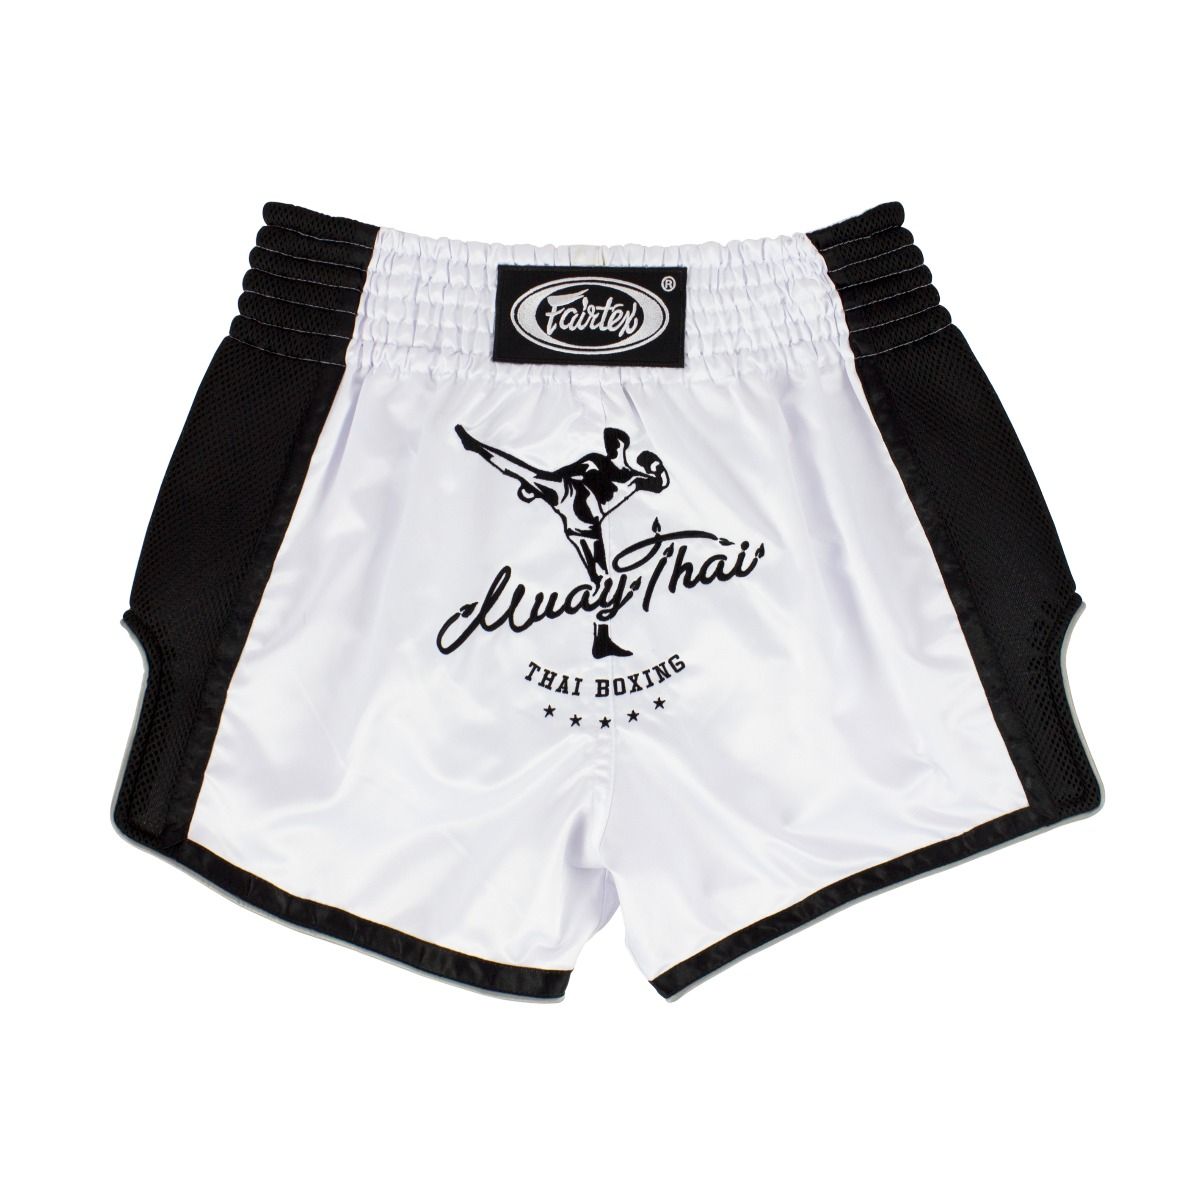 Quần short Fairtex Muaythai/Kickboxing - BS1707 - Hàng chính hãng, nhiều size